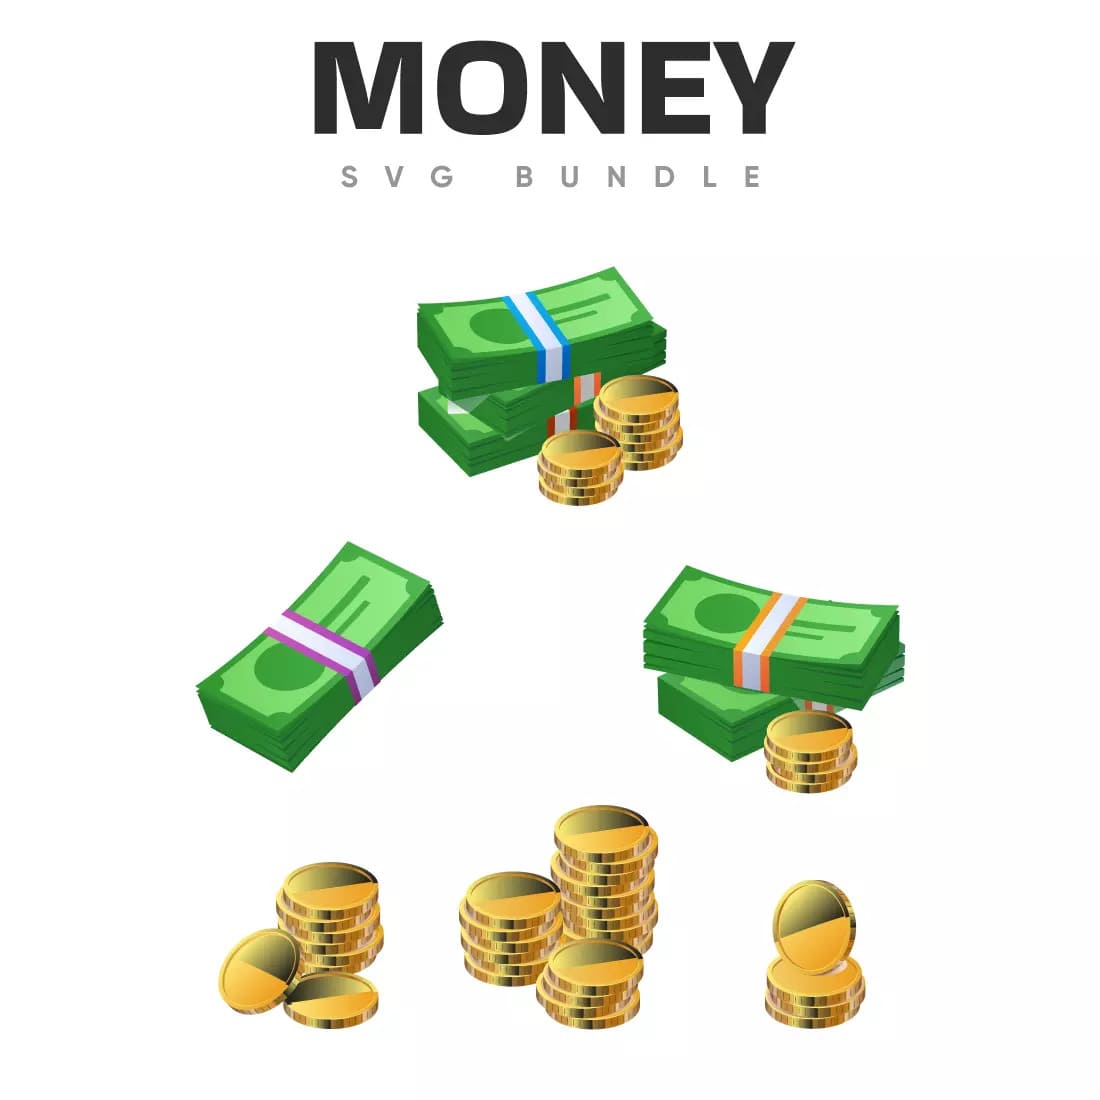 Money SVG Bundle Preview.